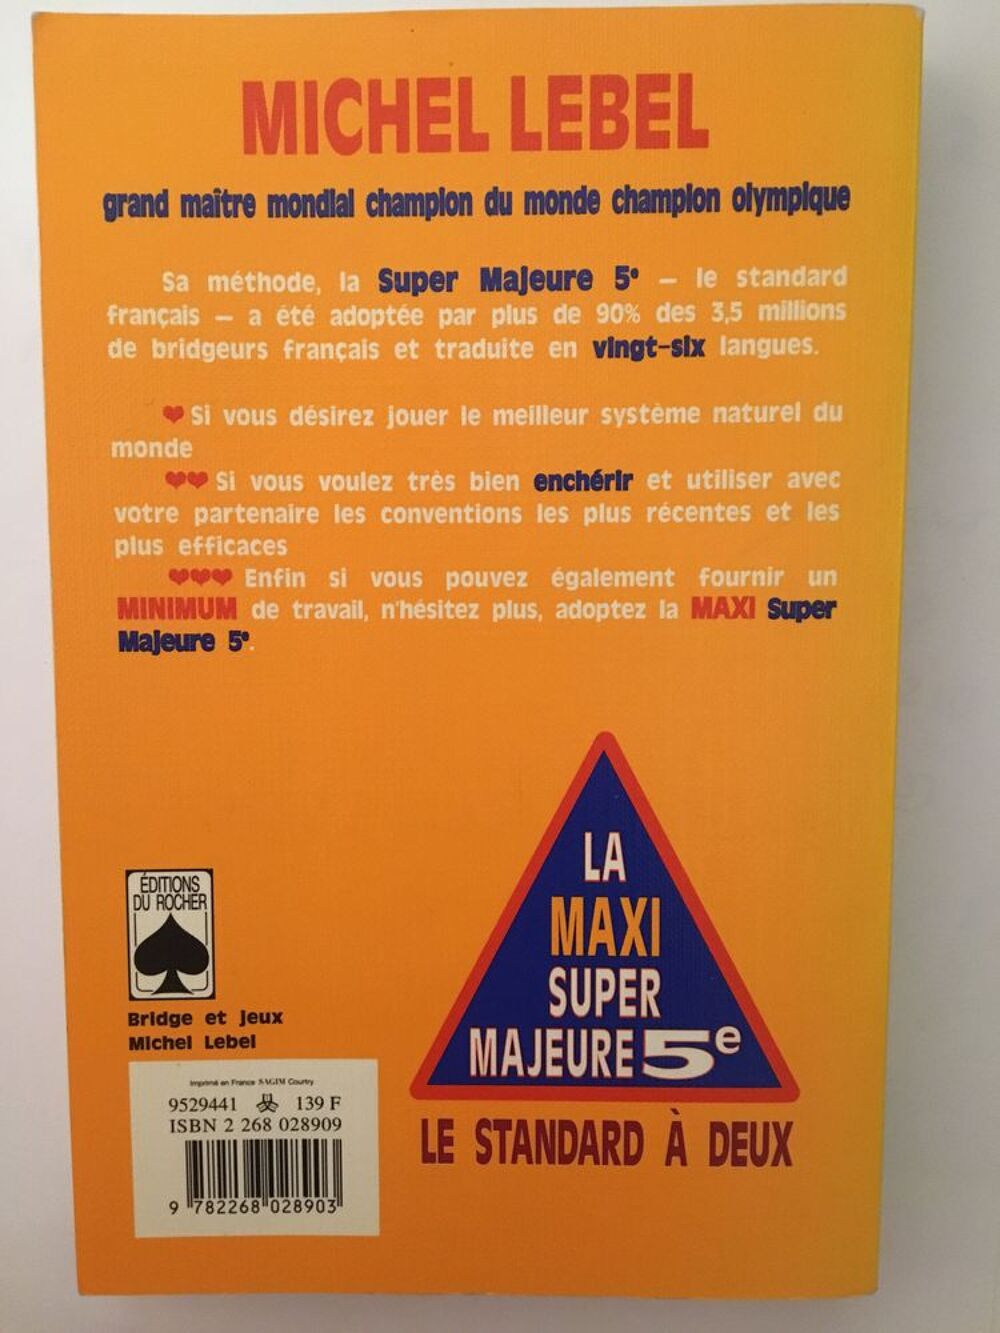 La Maxi Super Majeure Cinqui&egrave;me : Le Standard &agrave; deux Livres et BD